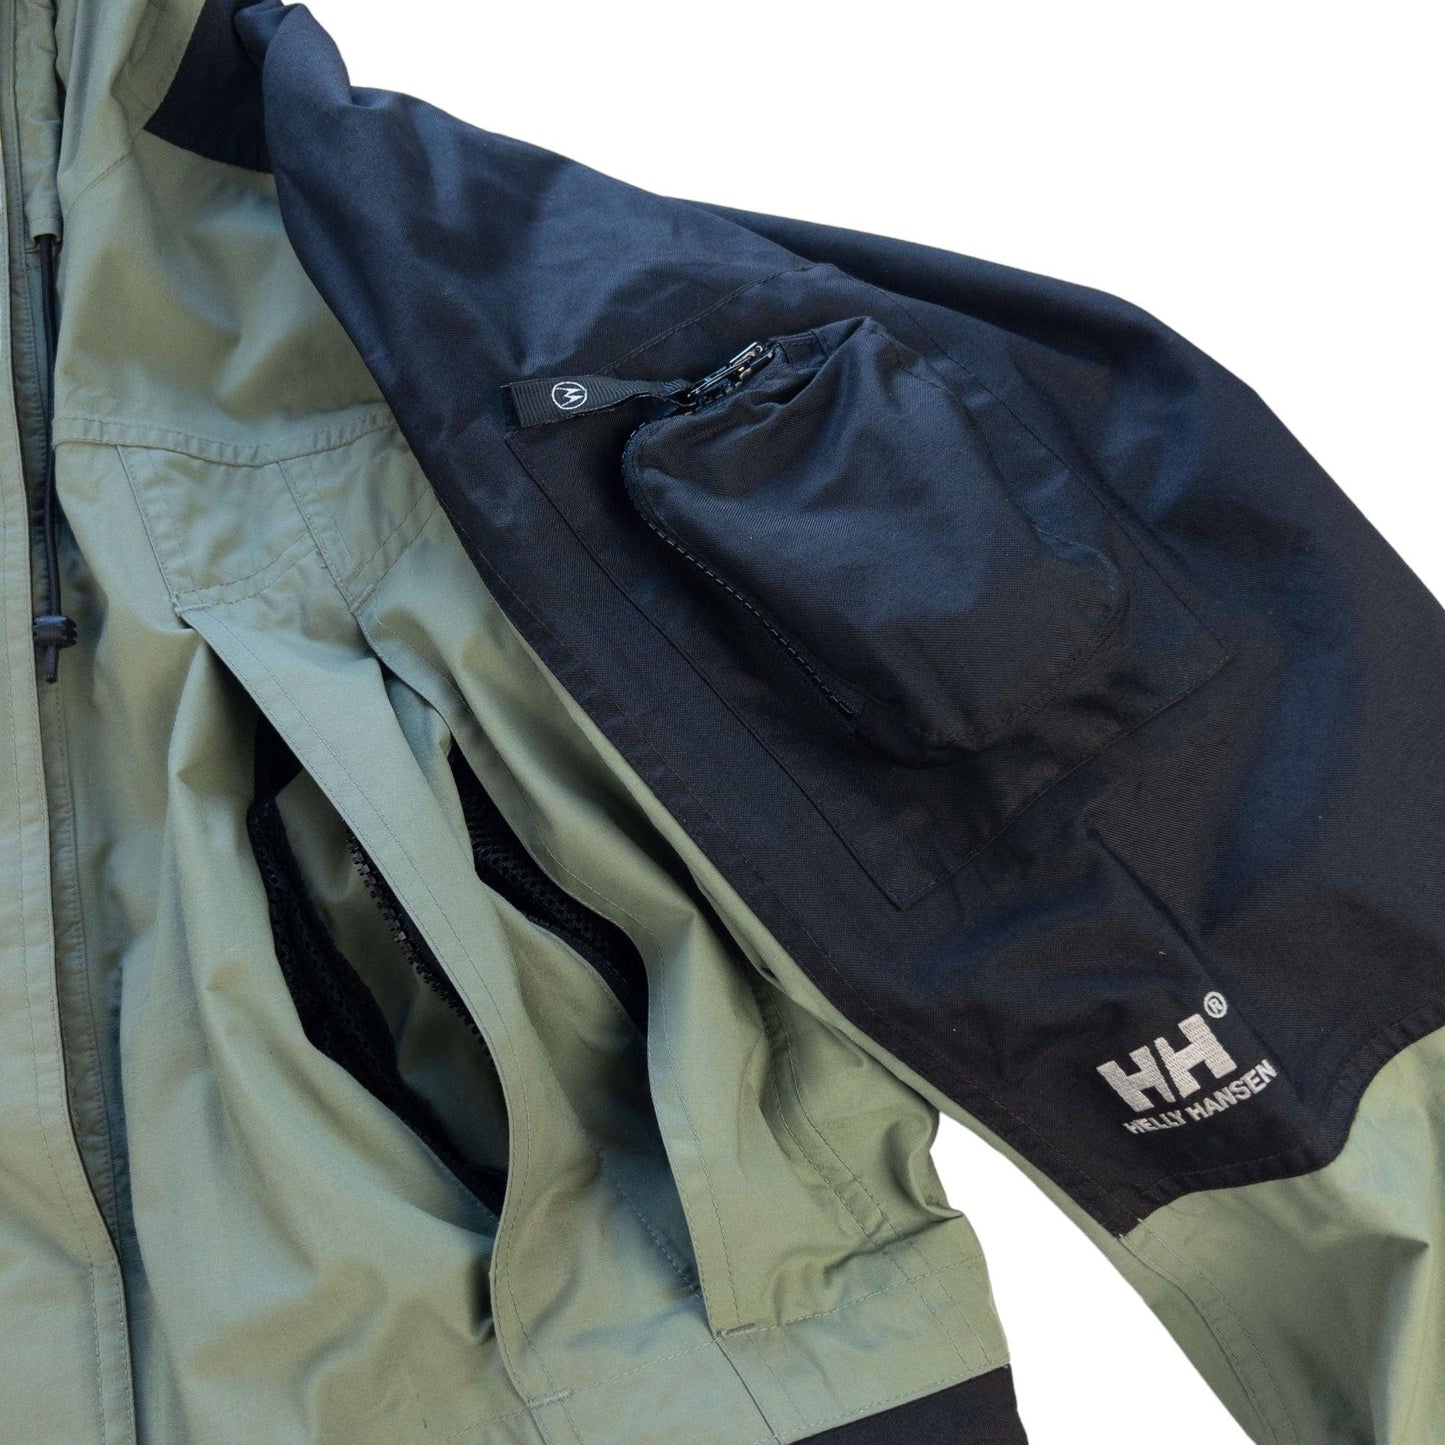 Vintage Helly Hansen Jacket Size M - Known Source